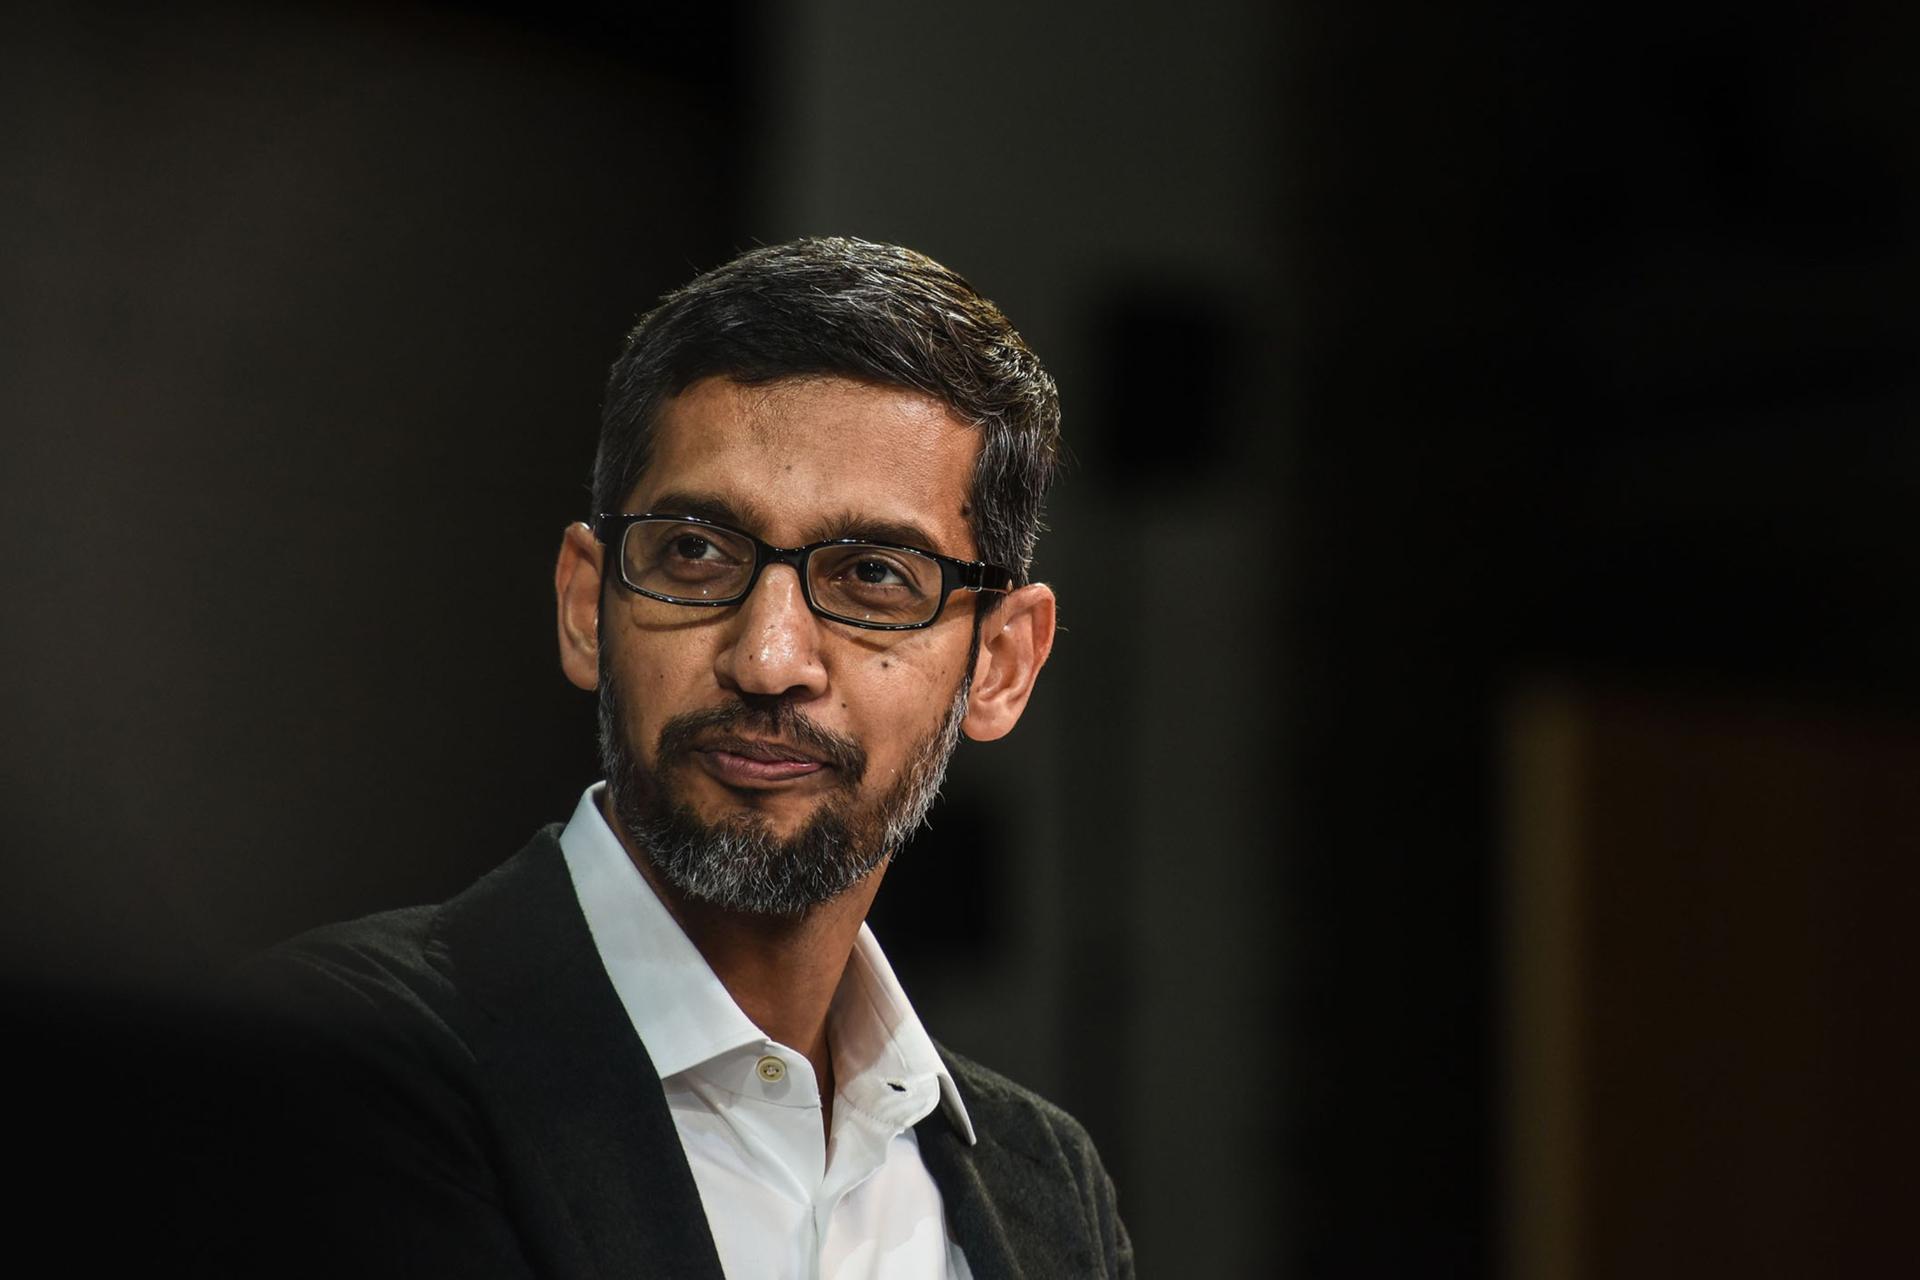 ساندار پیچای / Sundar Pichai مدیرعامل گوگل با عینک کت شلوار خوشحال